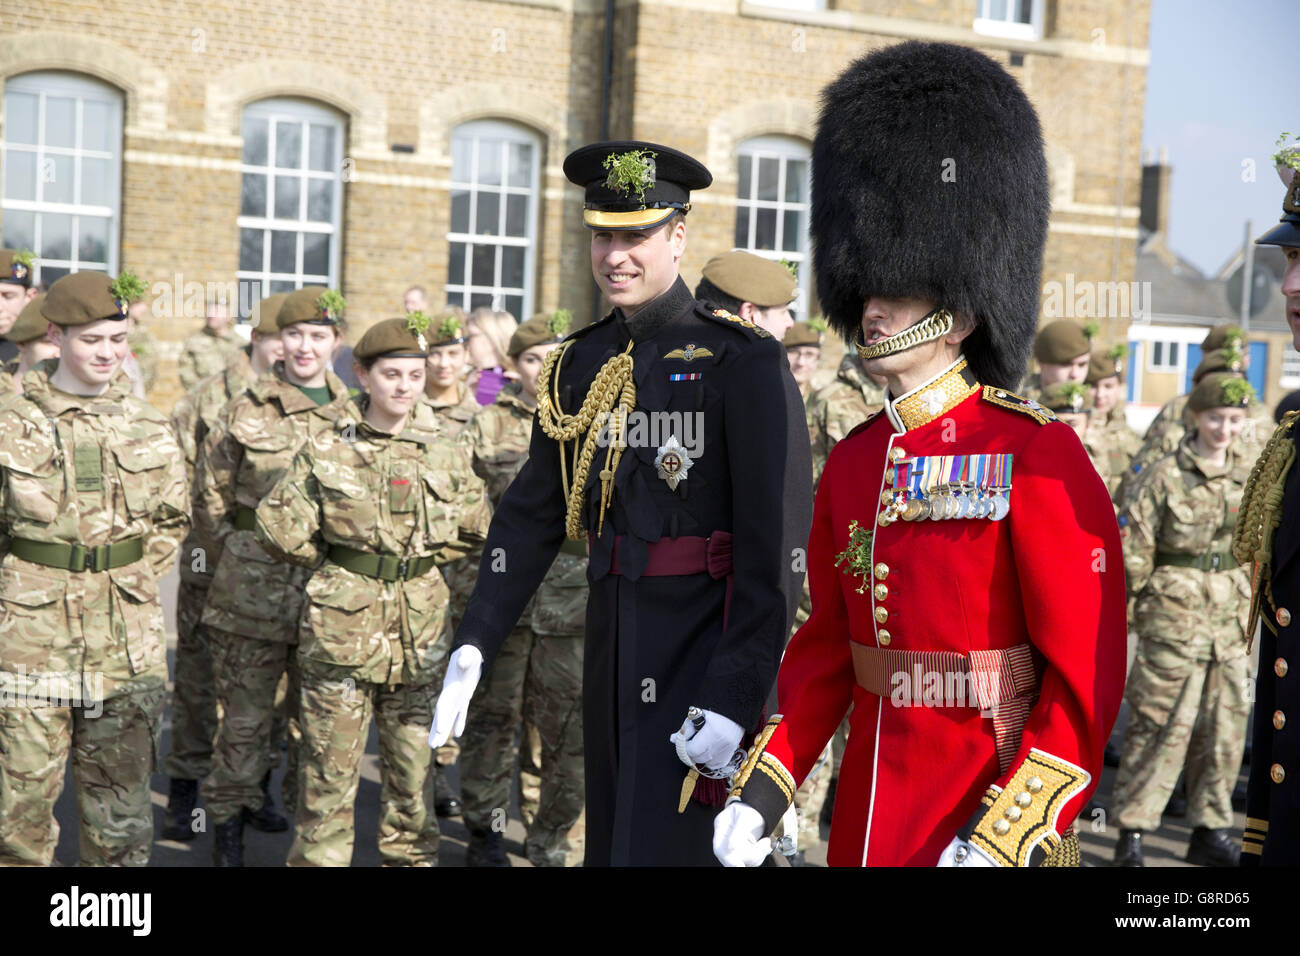 Membres des gardes irlandais lors d'une visite du duc de Cambridge au défilé du régiment de la St Patrick à la caserne de Cavalry à Hounslow, dans l'ouest de Londres. Banque D'Images